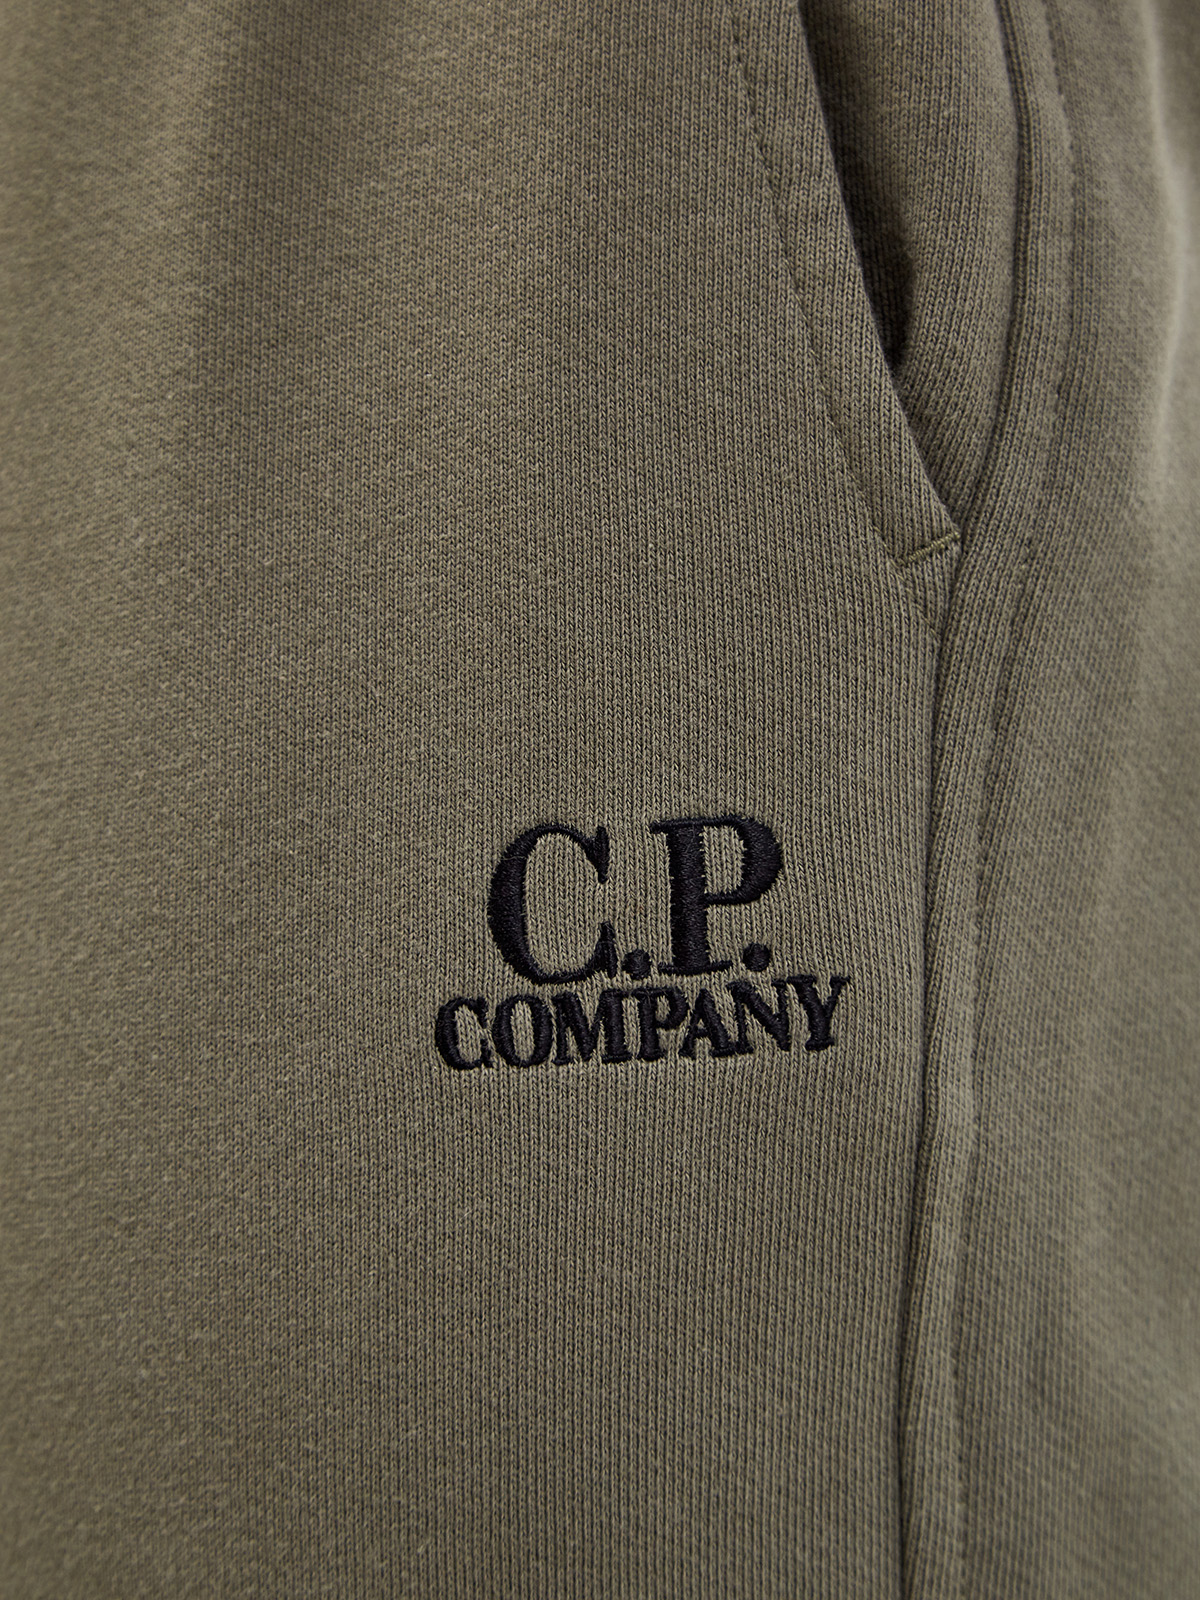 Спортивные джоггеры свободного кроя с вышитым логотипом C.P.COMPANY, цвет зеленый, размер S;M;L;XL - фото 5